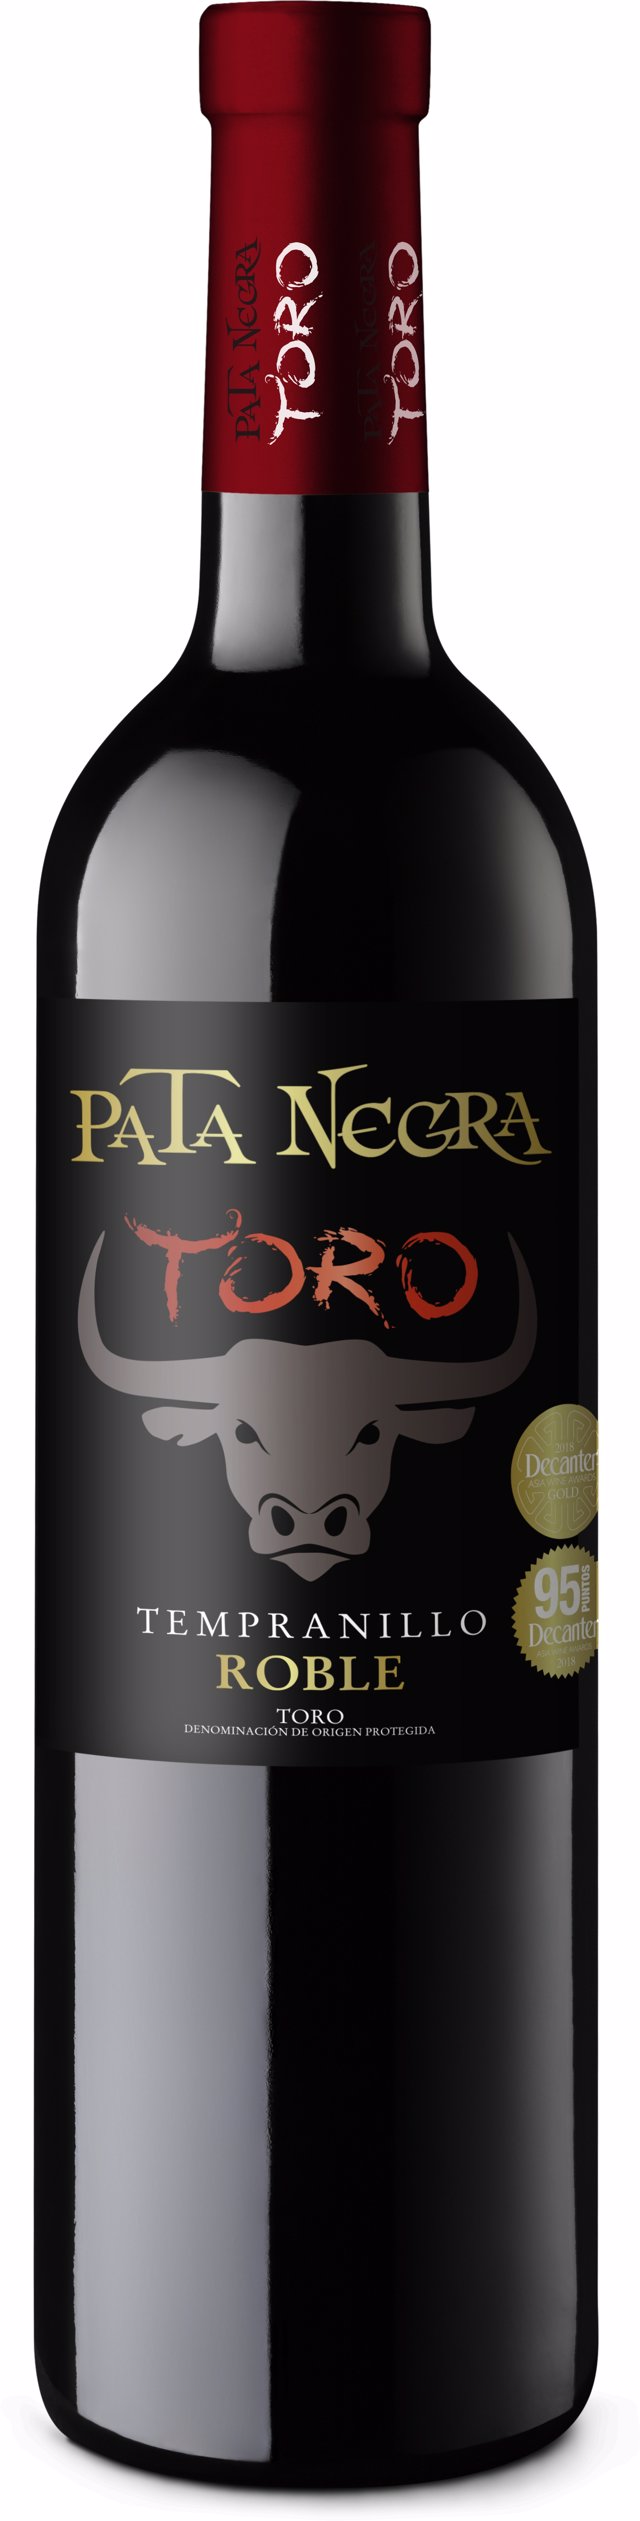 Pata Negra Toro Roble (García Carrión), el mejor vino de Toro con 95 puntos  Decanter